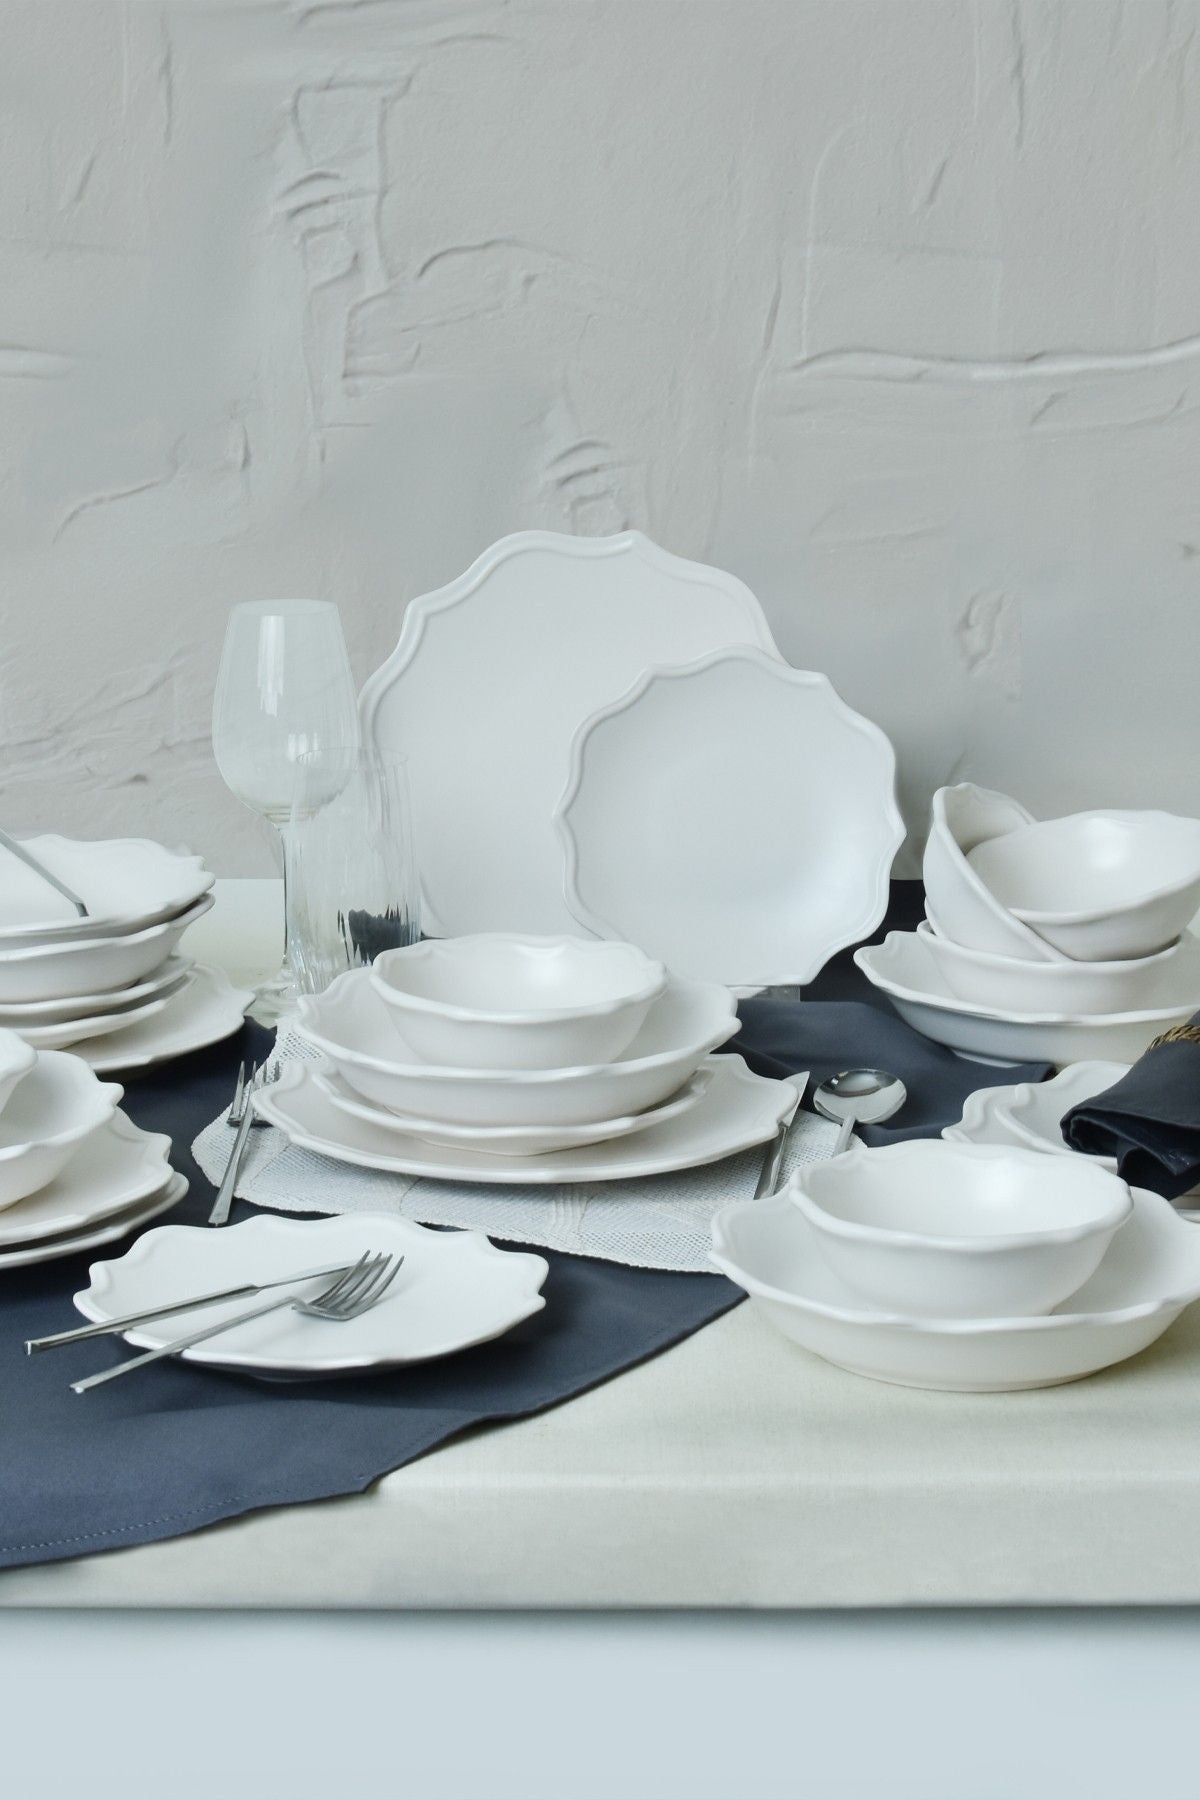 X0001517600000000000000000 - Ceramic Dinner Set (24 Pieces)